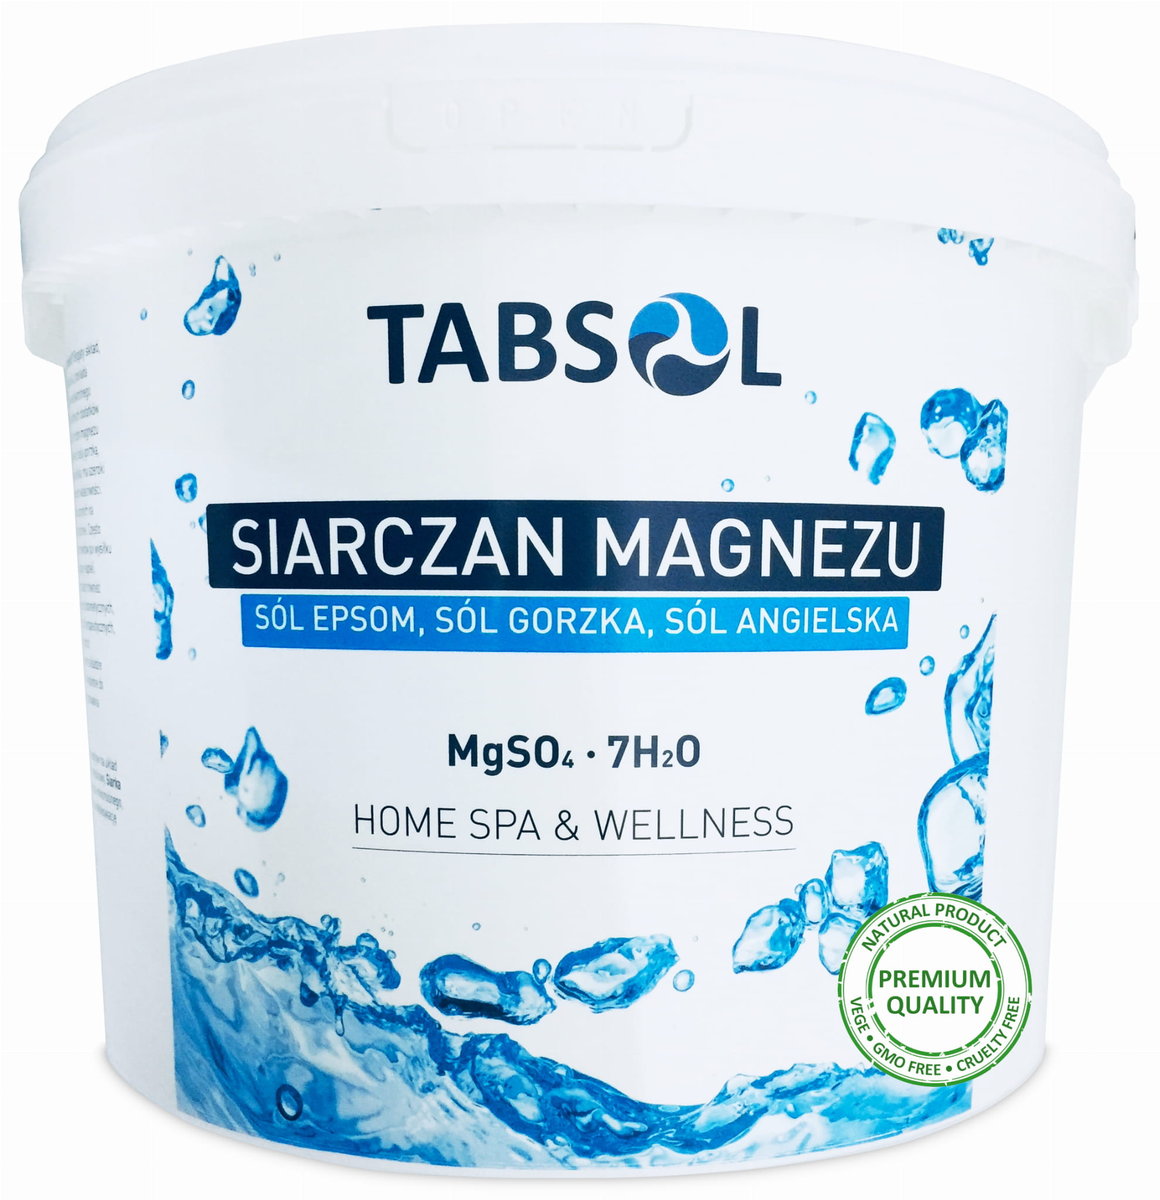 Siarczan Magnezu sól epsom angielska gorzka 10kg